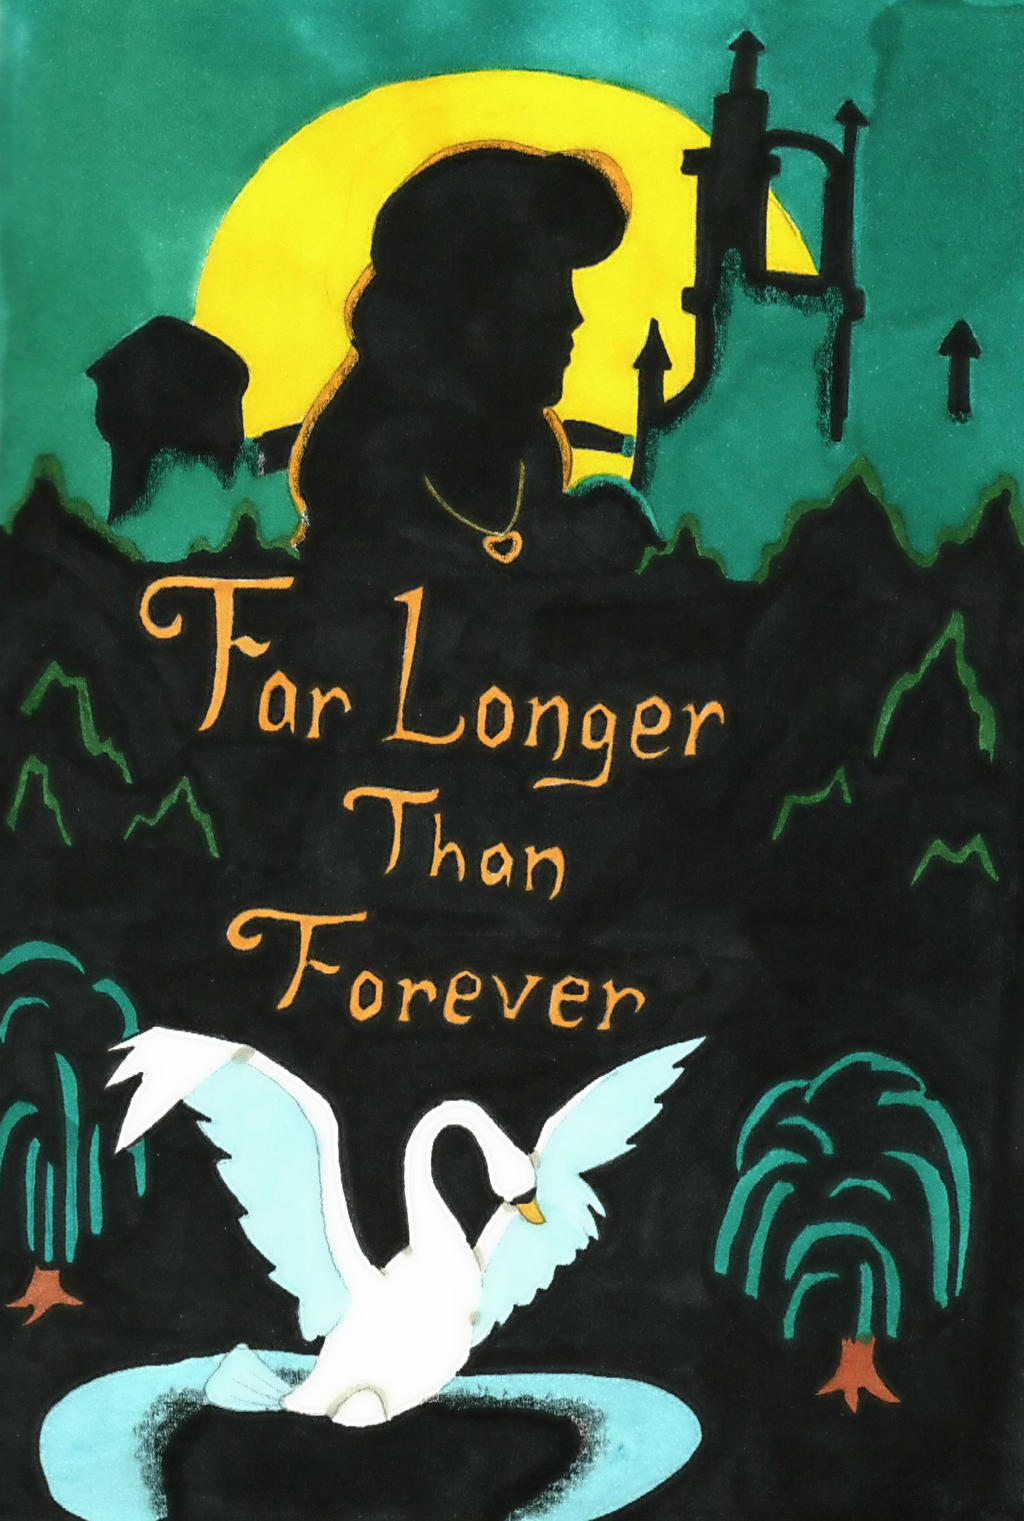 Far Longer Than Forever by madiquin185 on DeviantArt